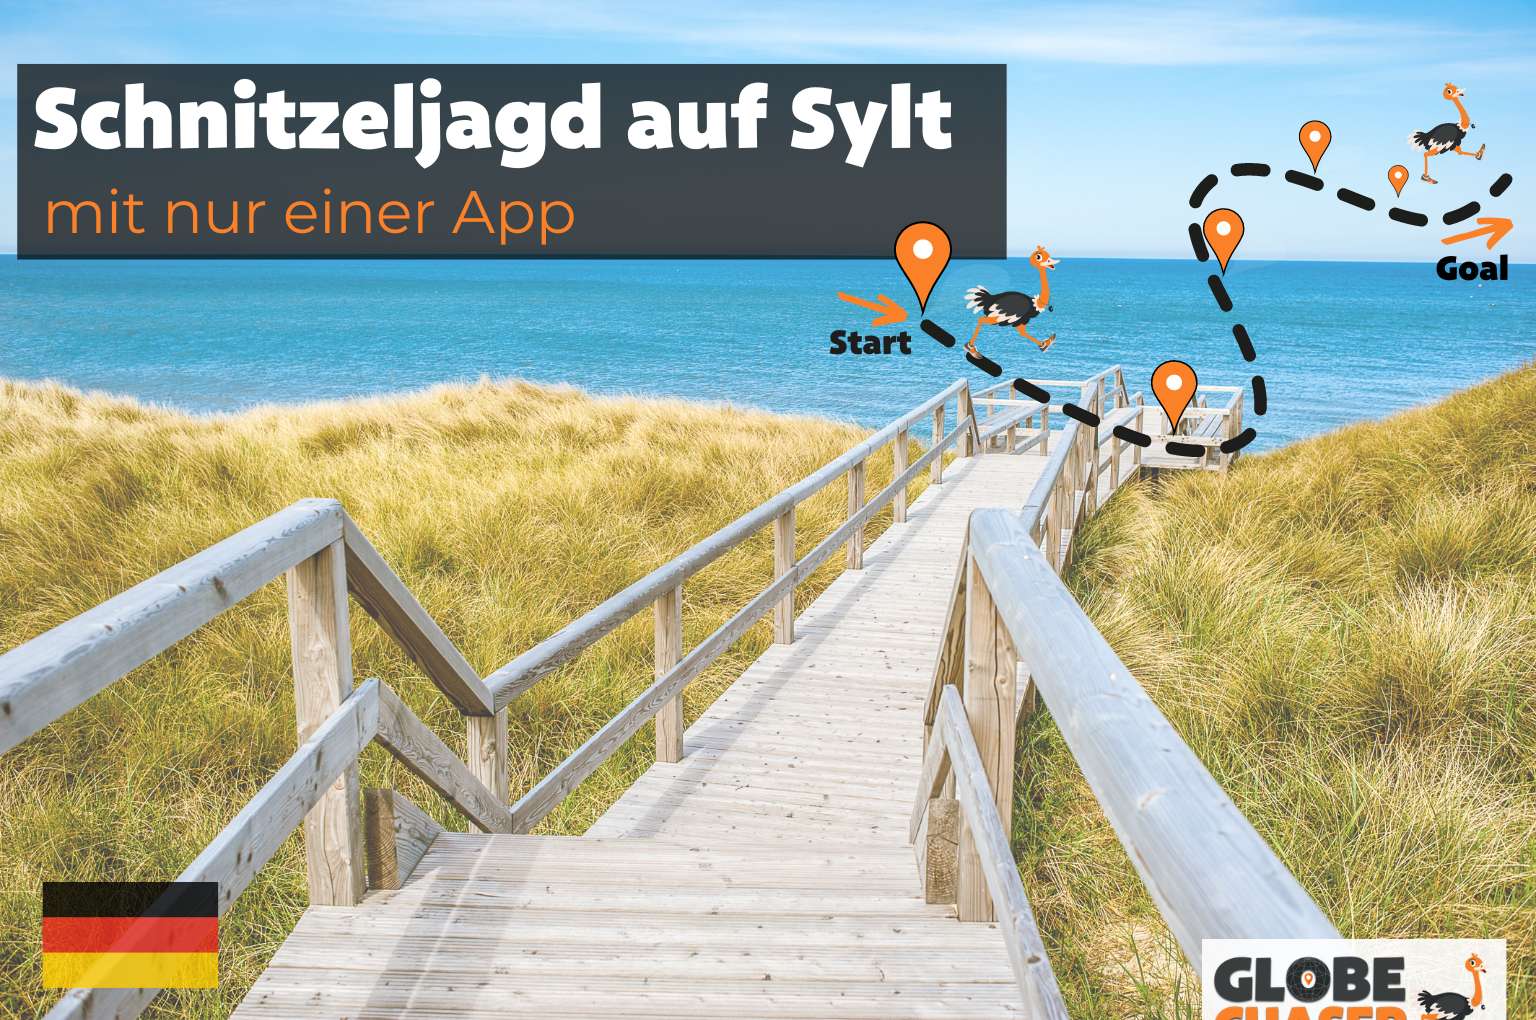 Schnitzeljagd auf Sylt mit App - Globe Chaser Erlebnisse Deutschland